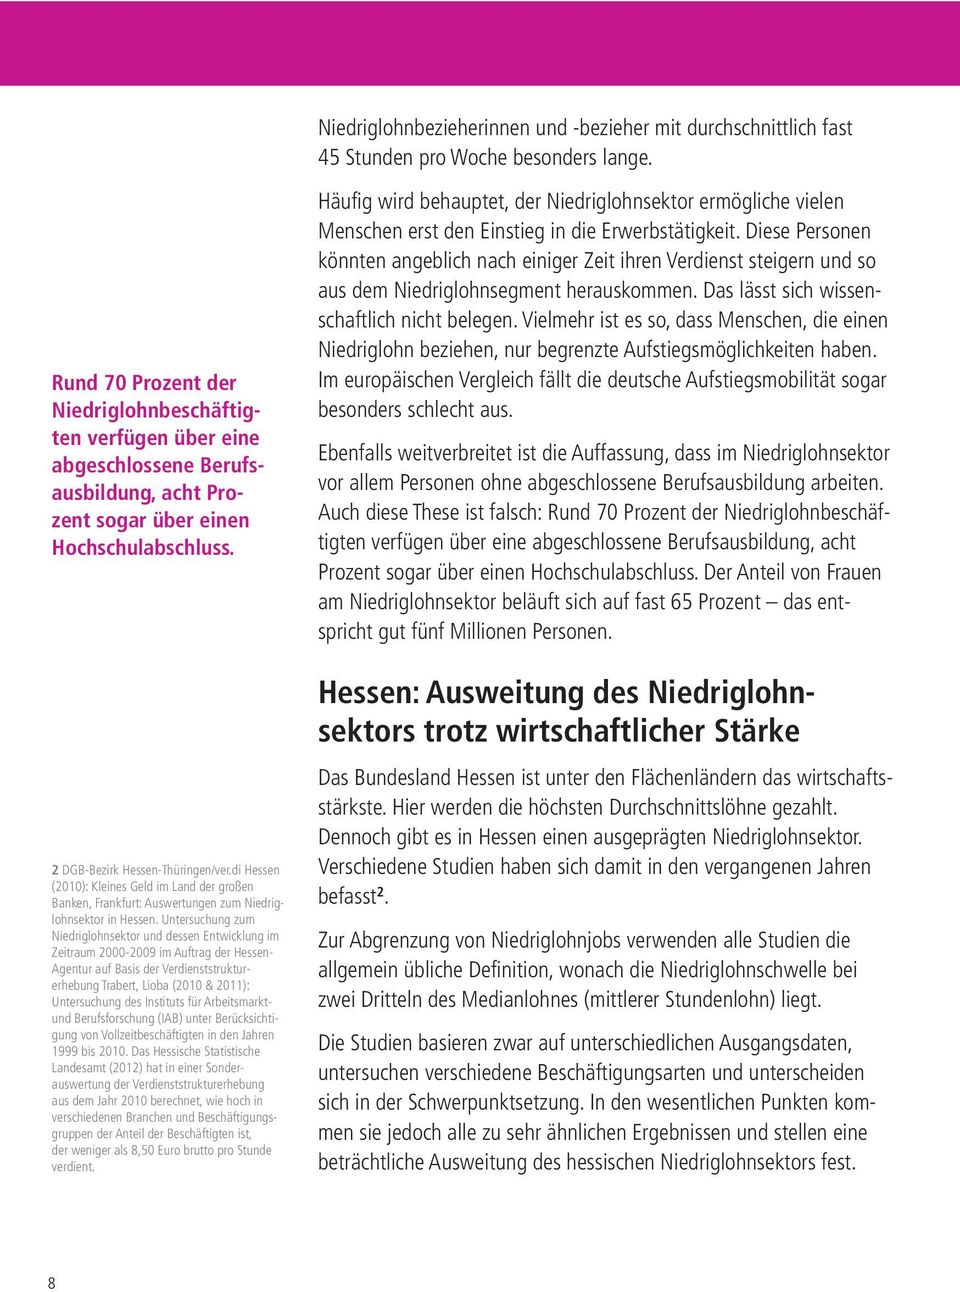 di Hessen (2010): Kleines Geld im Land der großen Banken, Frankfurt: Auswertungen zum Niedriglohnsektor in Hessen.